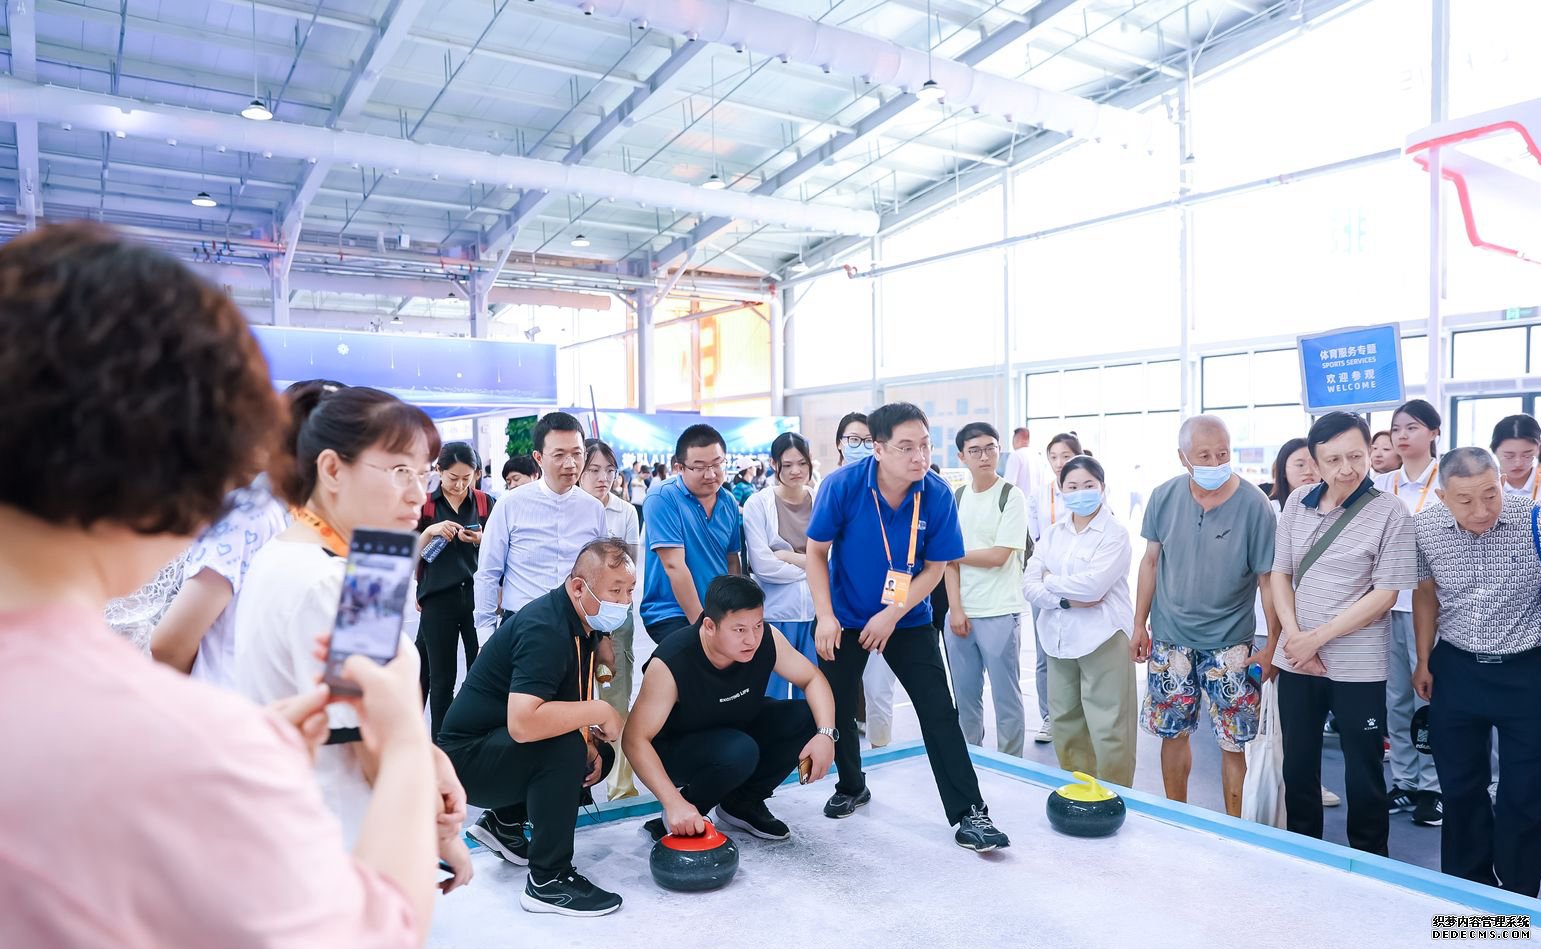 体育服务专题展区内，一场冰壶比赛正在上演。图片来源：中国国际服务贸易交易会